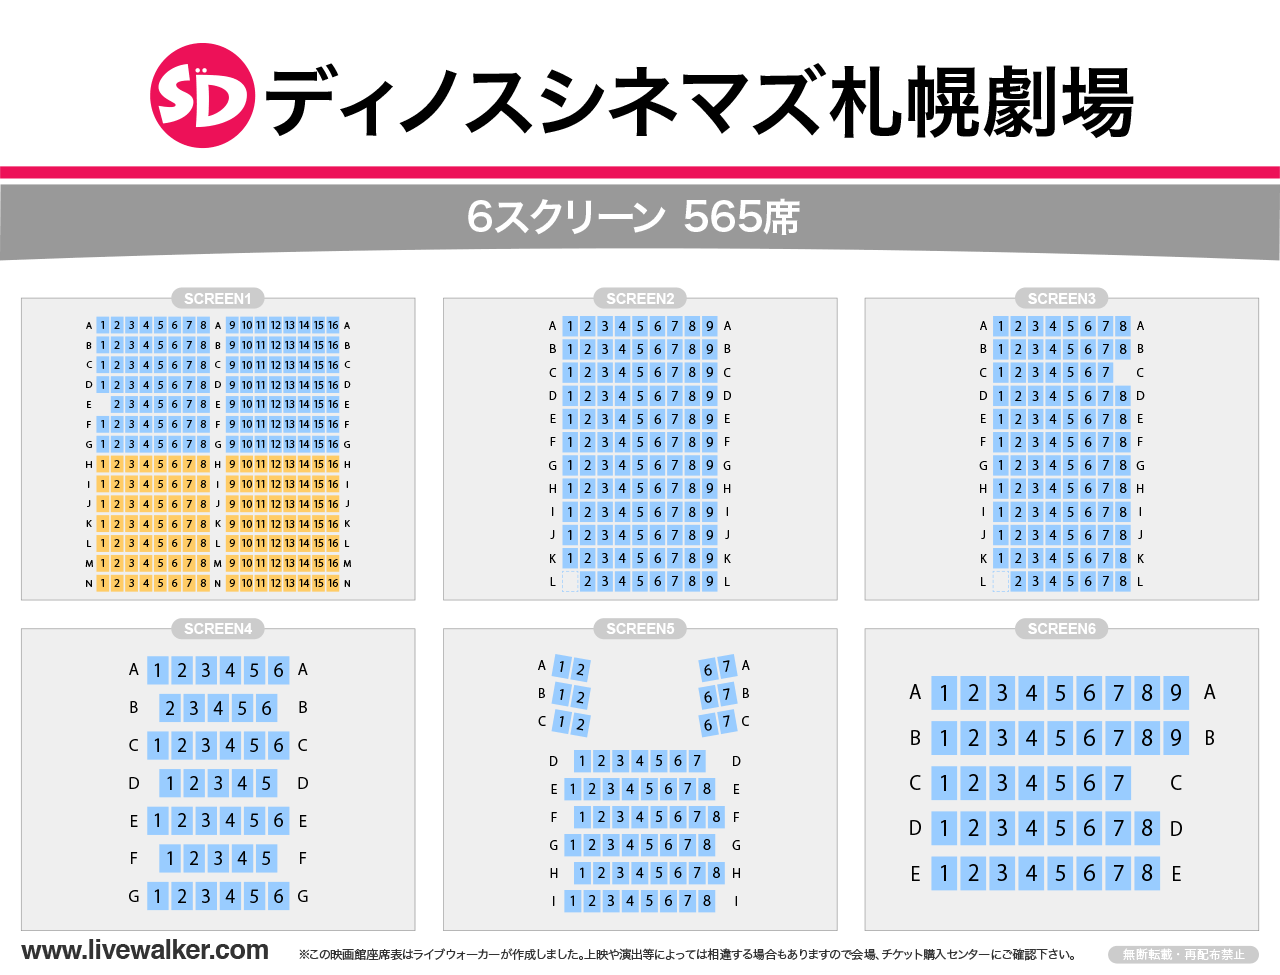 ディノスシネマズ札幌劇場スクリーンの座席表